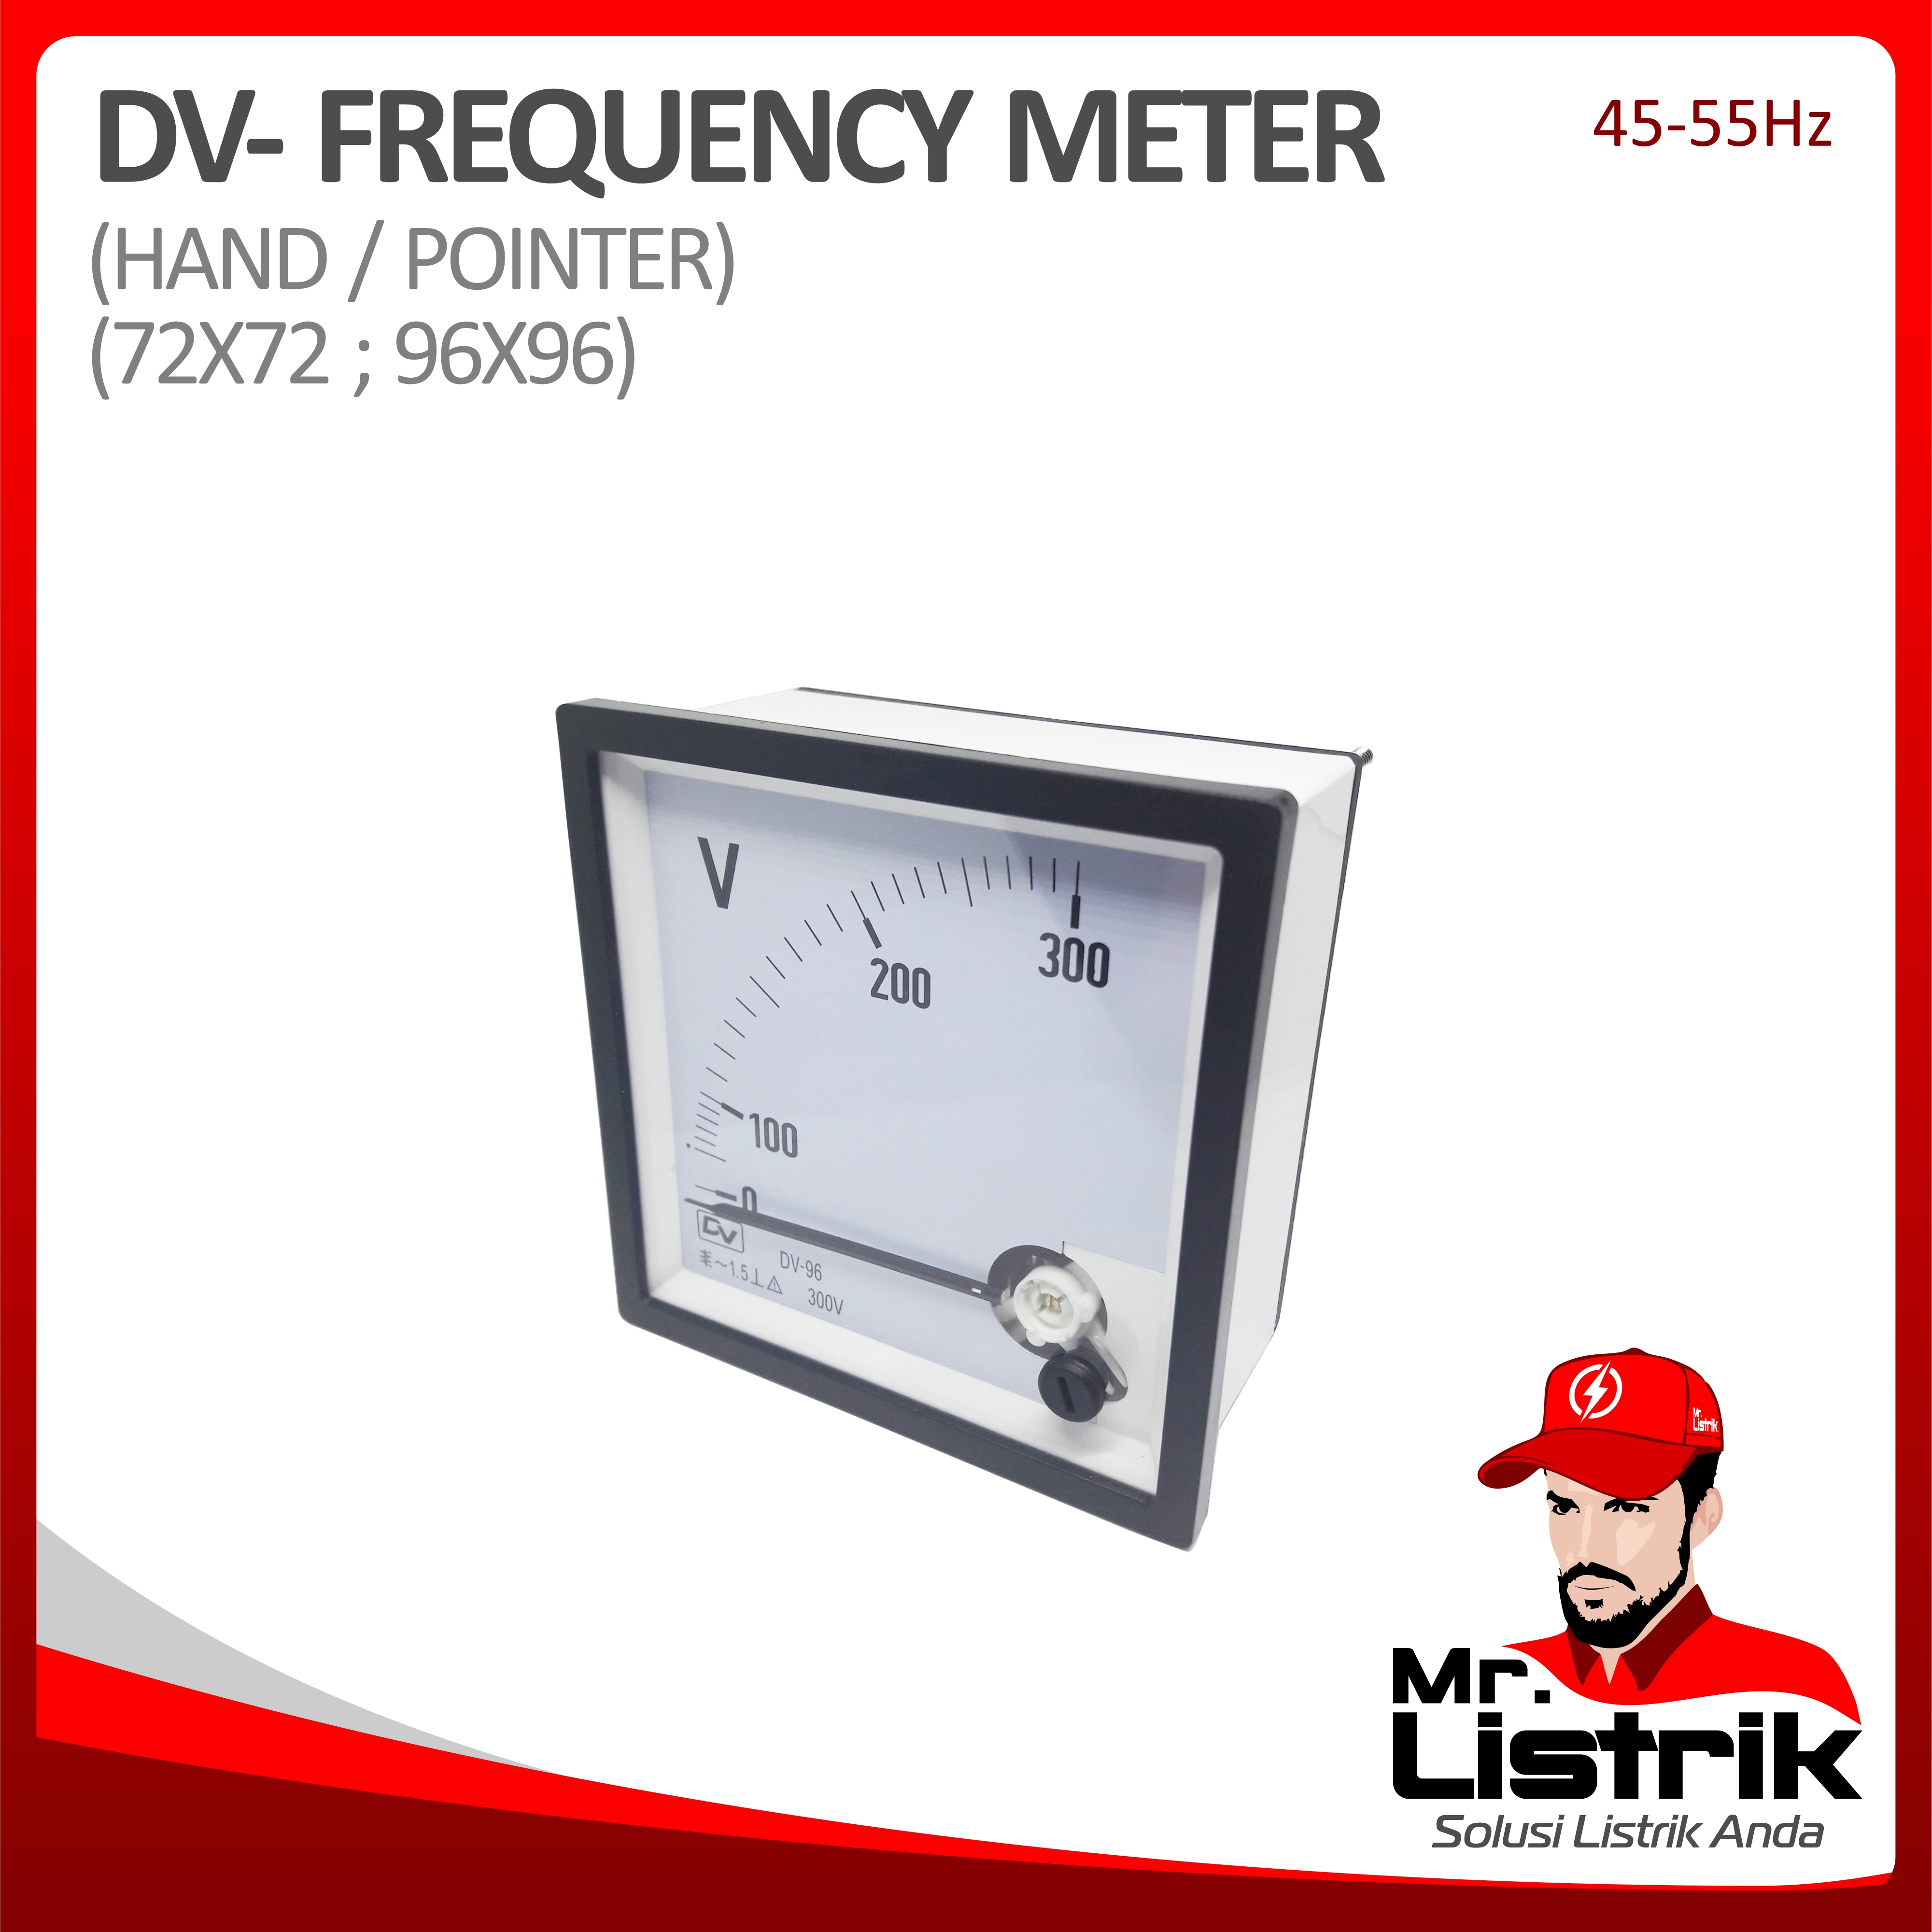 Frequency Meter Hand/Pointer DV 96x96 45-55Hz